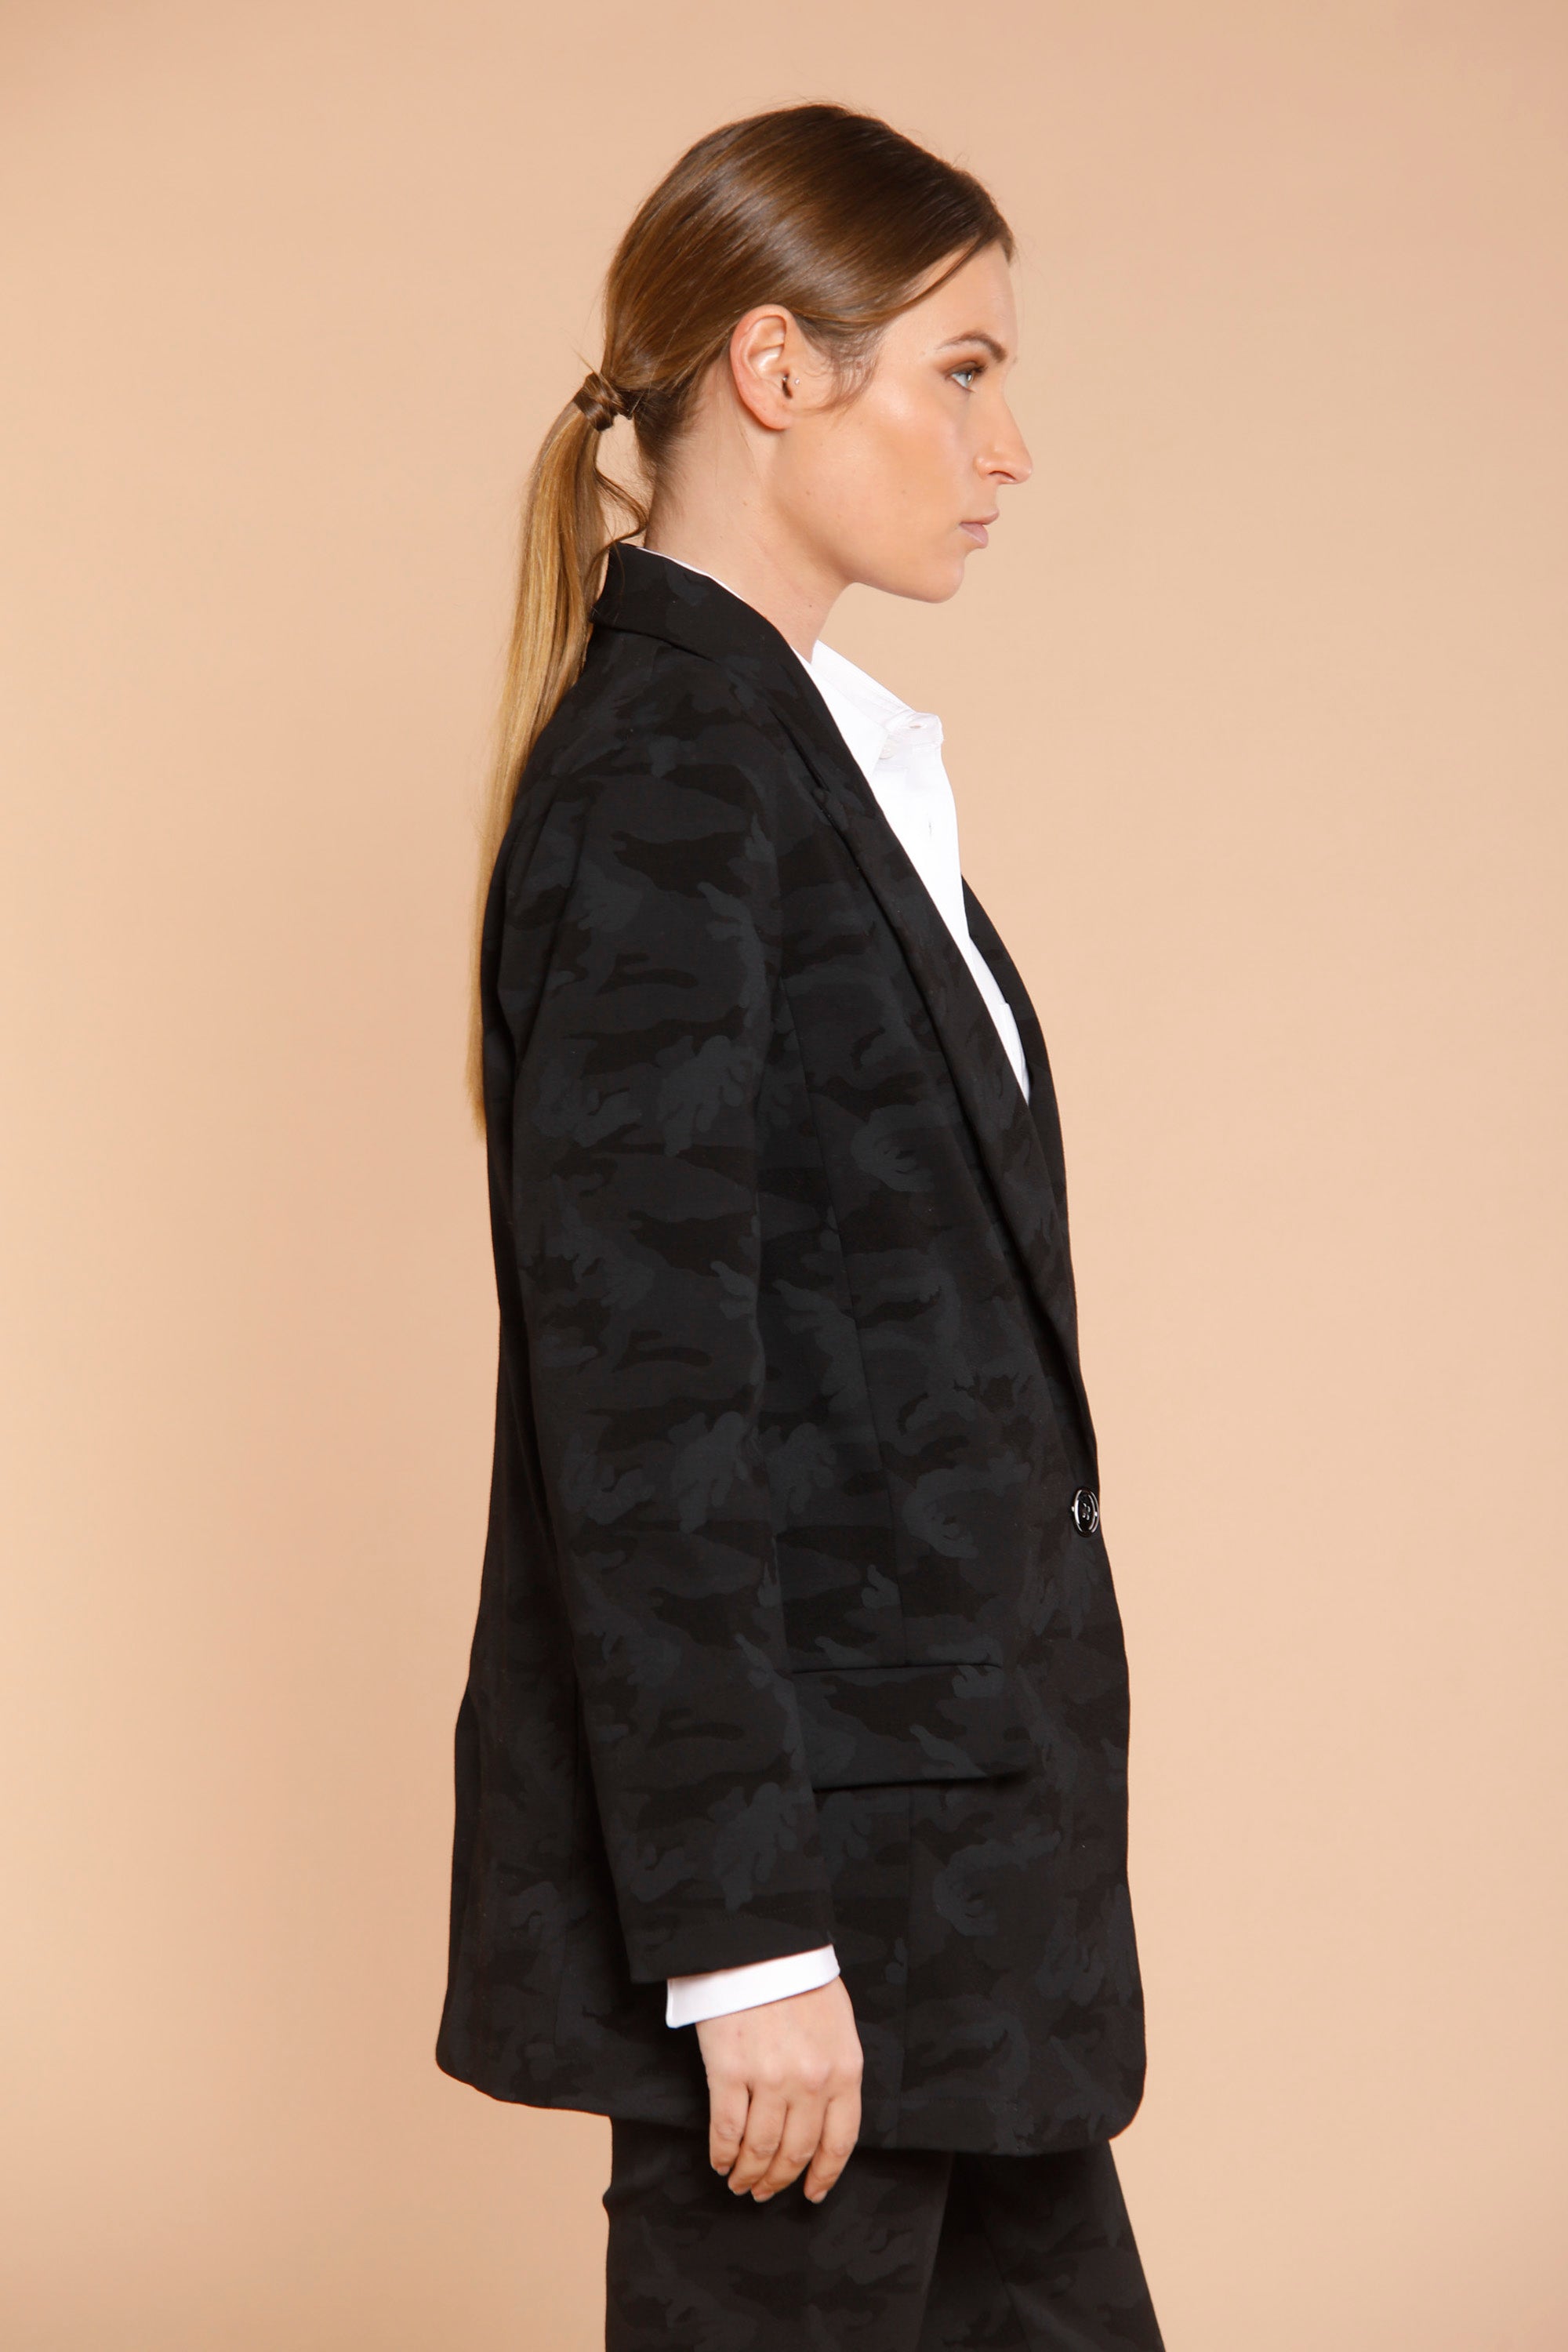 Bild 4 der Damen Blazer  aus Jersey Schwarz Camouflage-Muster  Modell Letizia von Mason’s